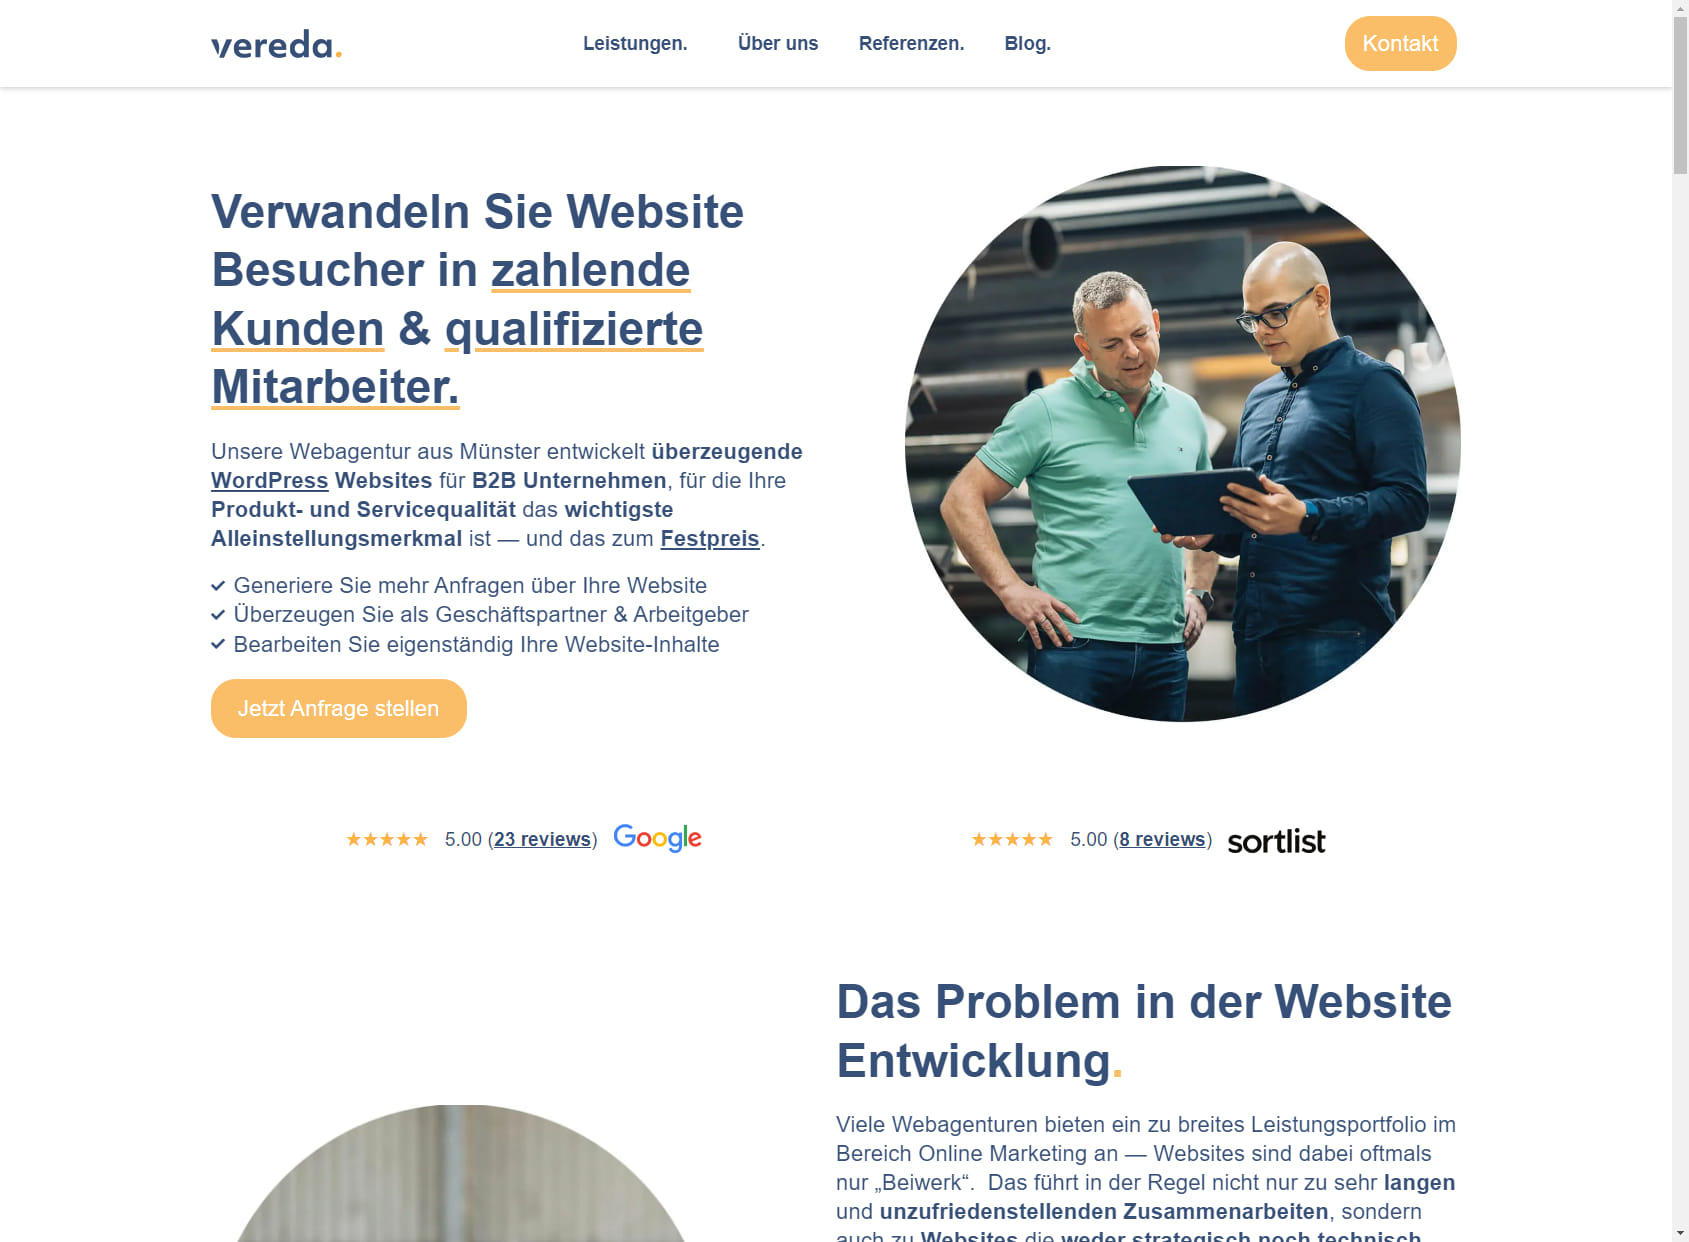 Webagentur vereda GmbH